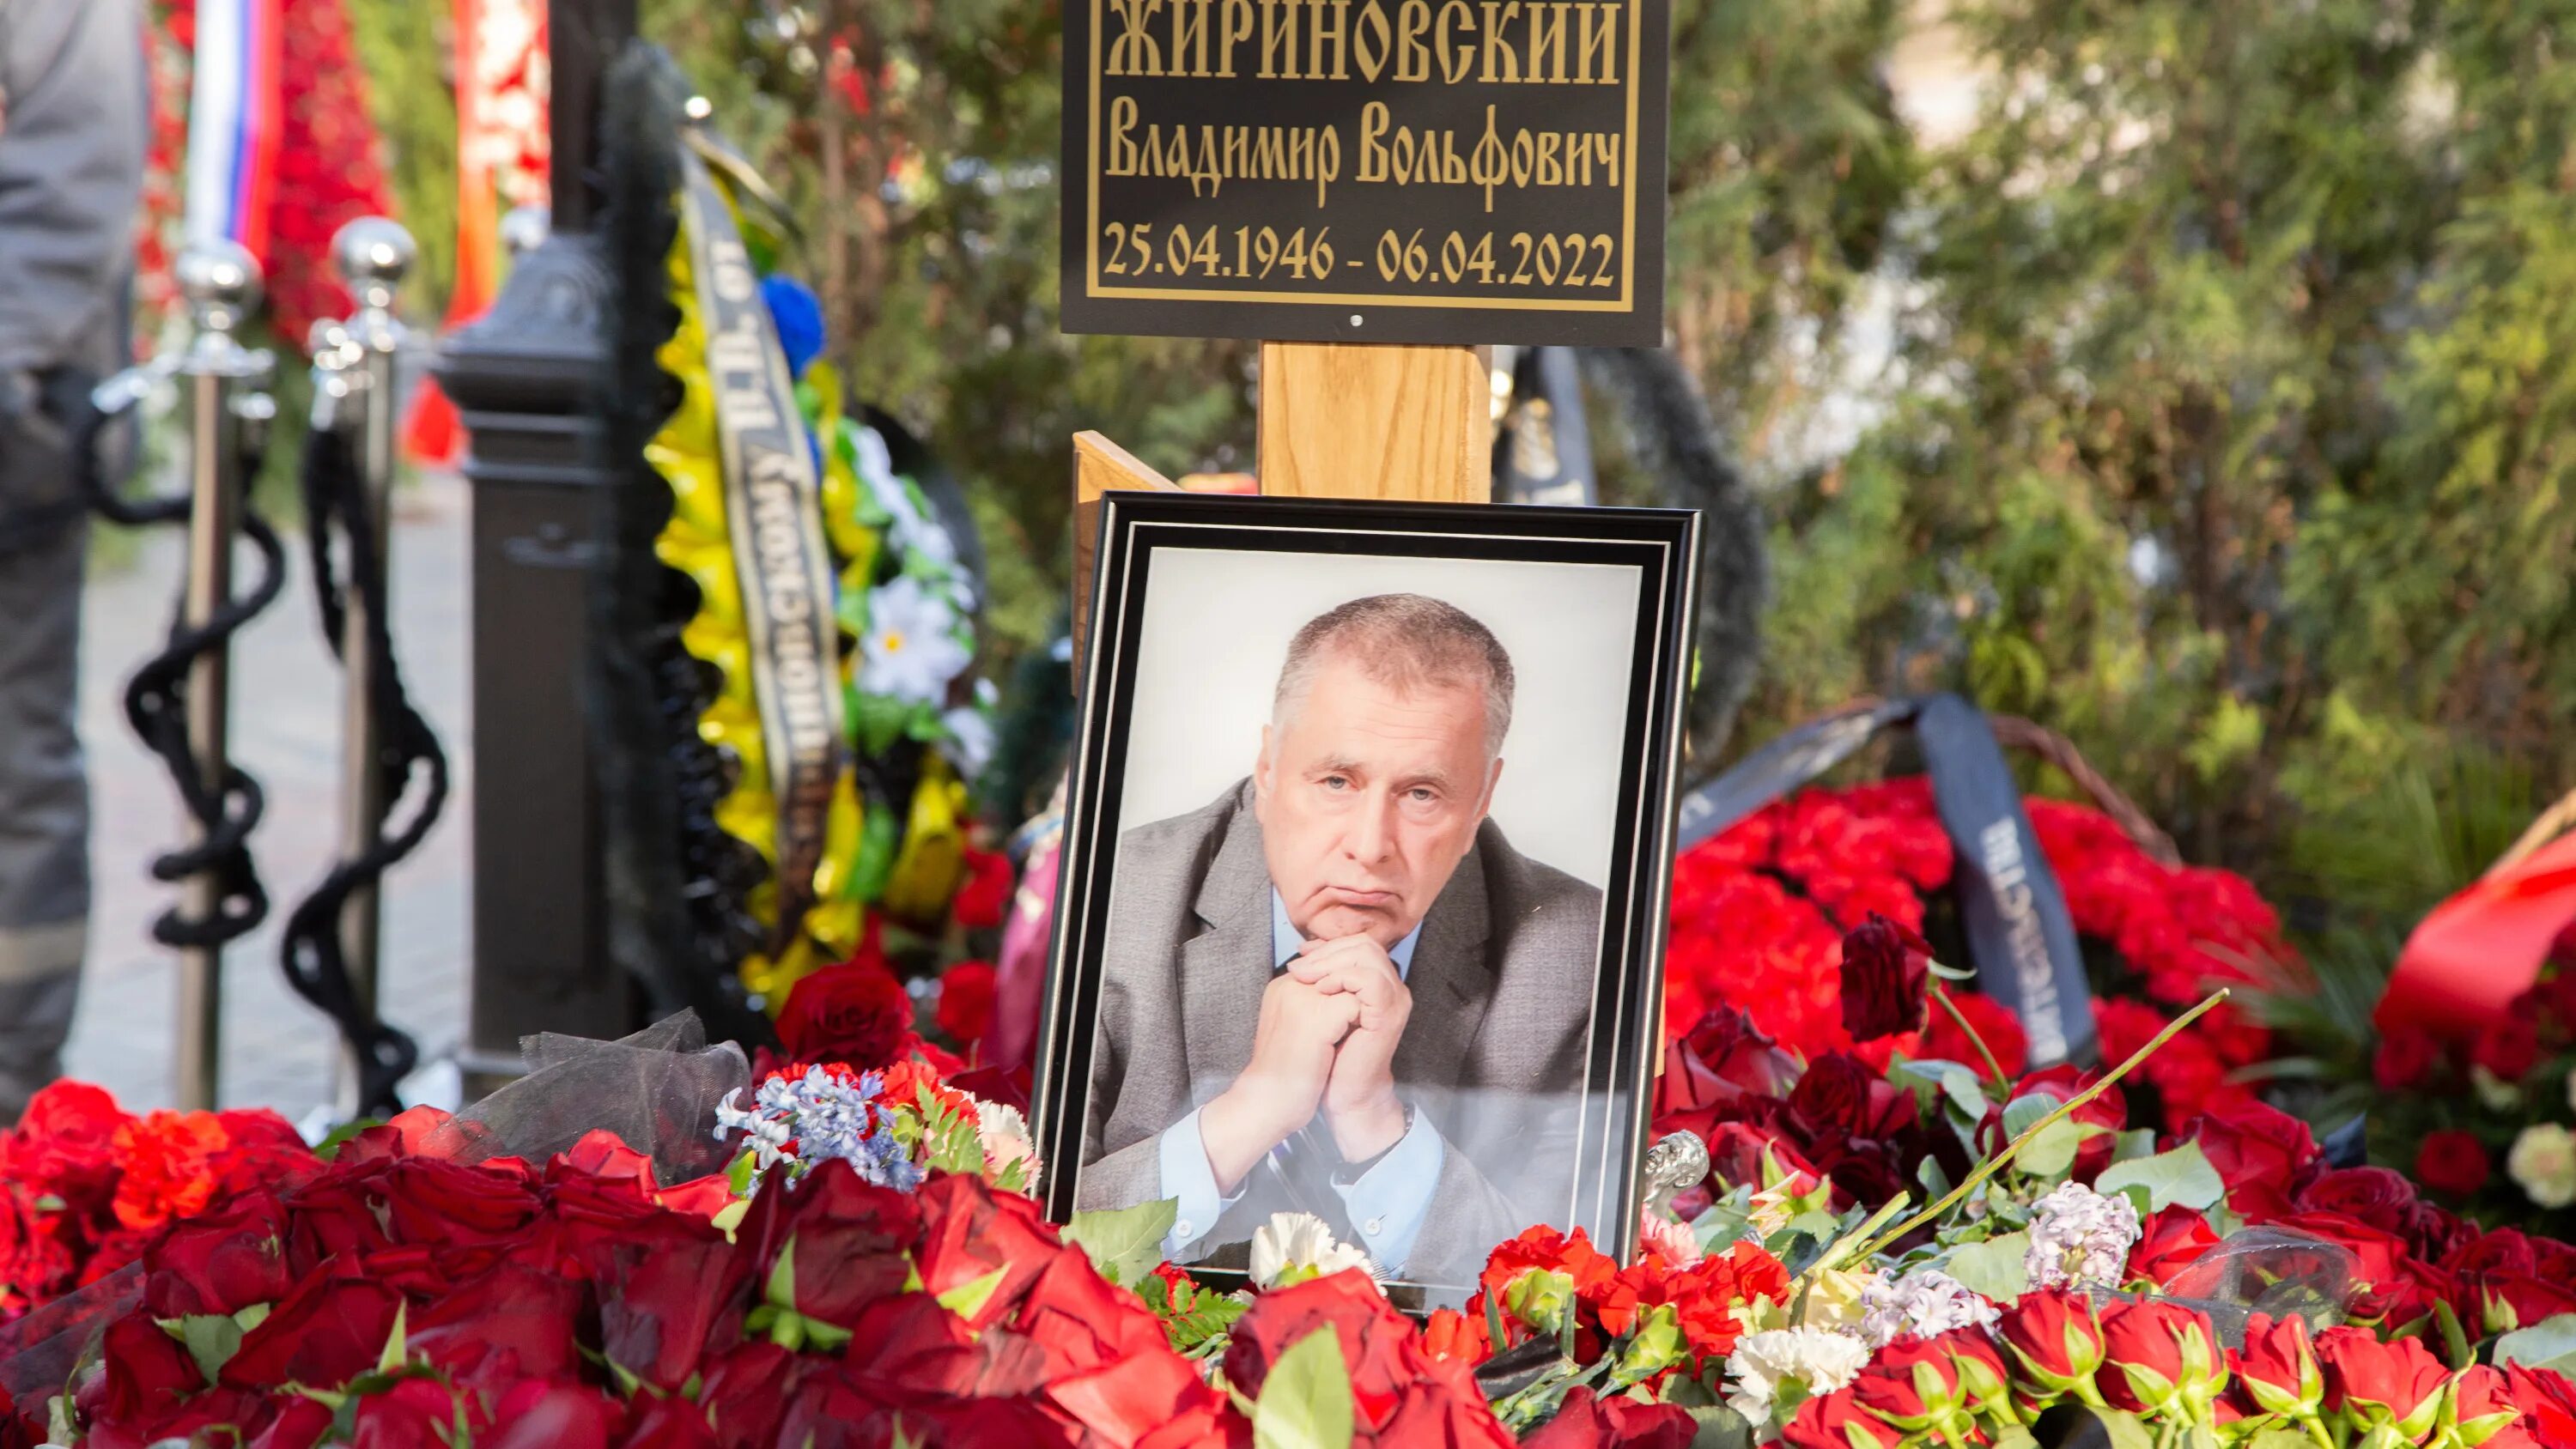 Жириновский умер дата. Улица в честь Жириновского.